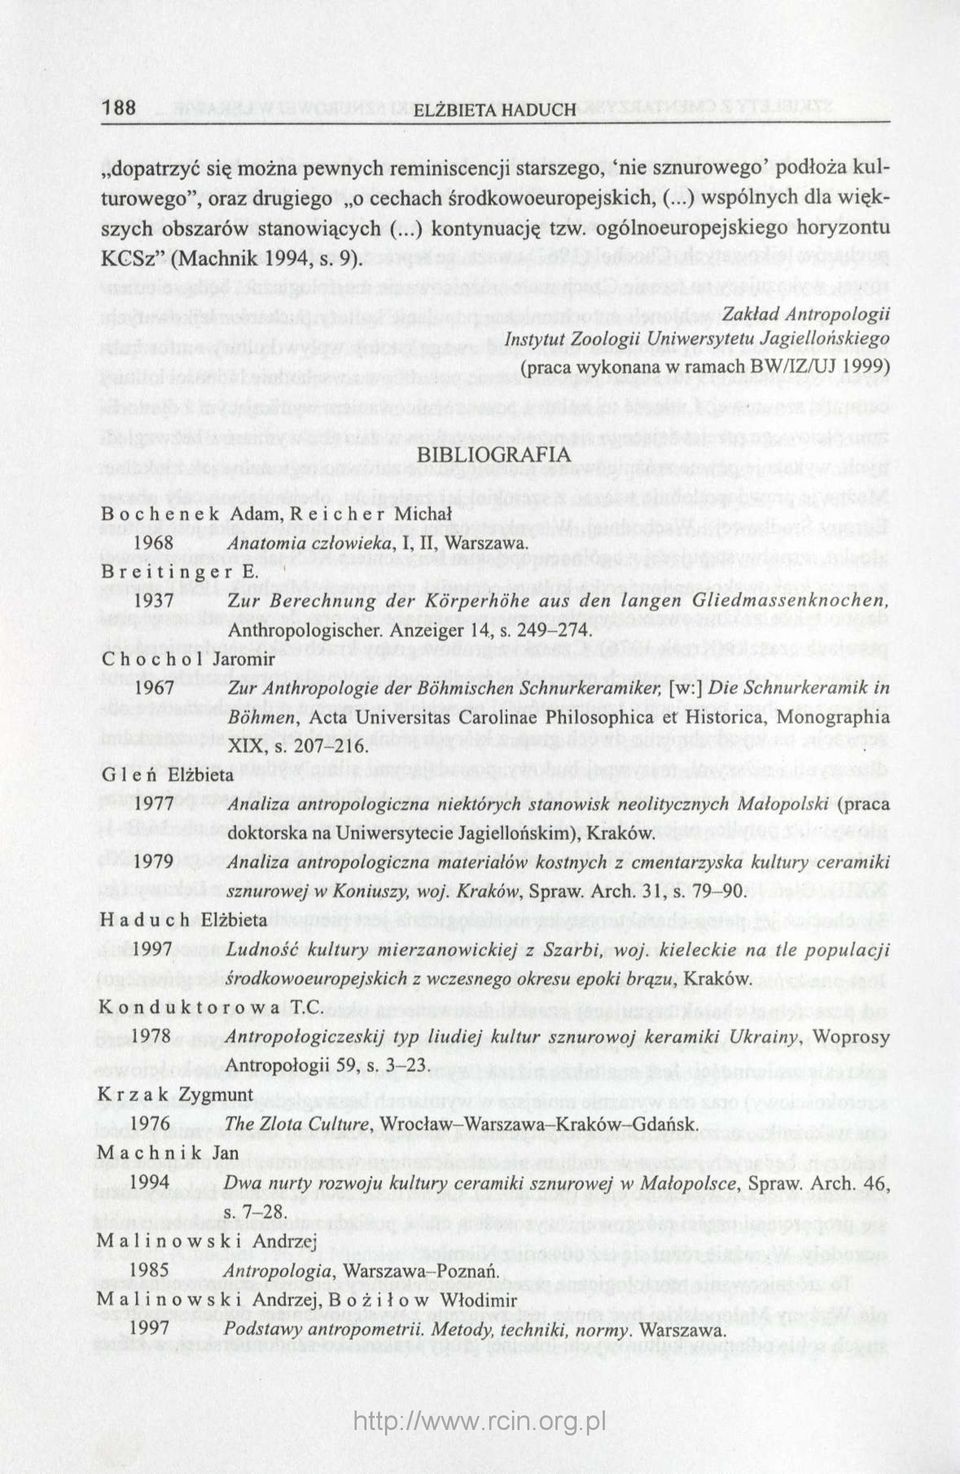 Zakład Antropologii Instytut Zoologii Uniwersytetu Jagiellońskiego (praca wykonana w ramach BW/IZ/UJ 1999) BIBLIOGRAFIA Bochenek Adam, Reicher Michał 1968 Anatomia człowieka, I, II, Warszawa.